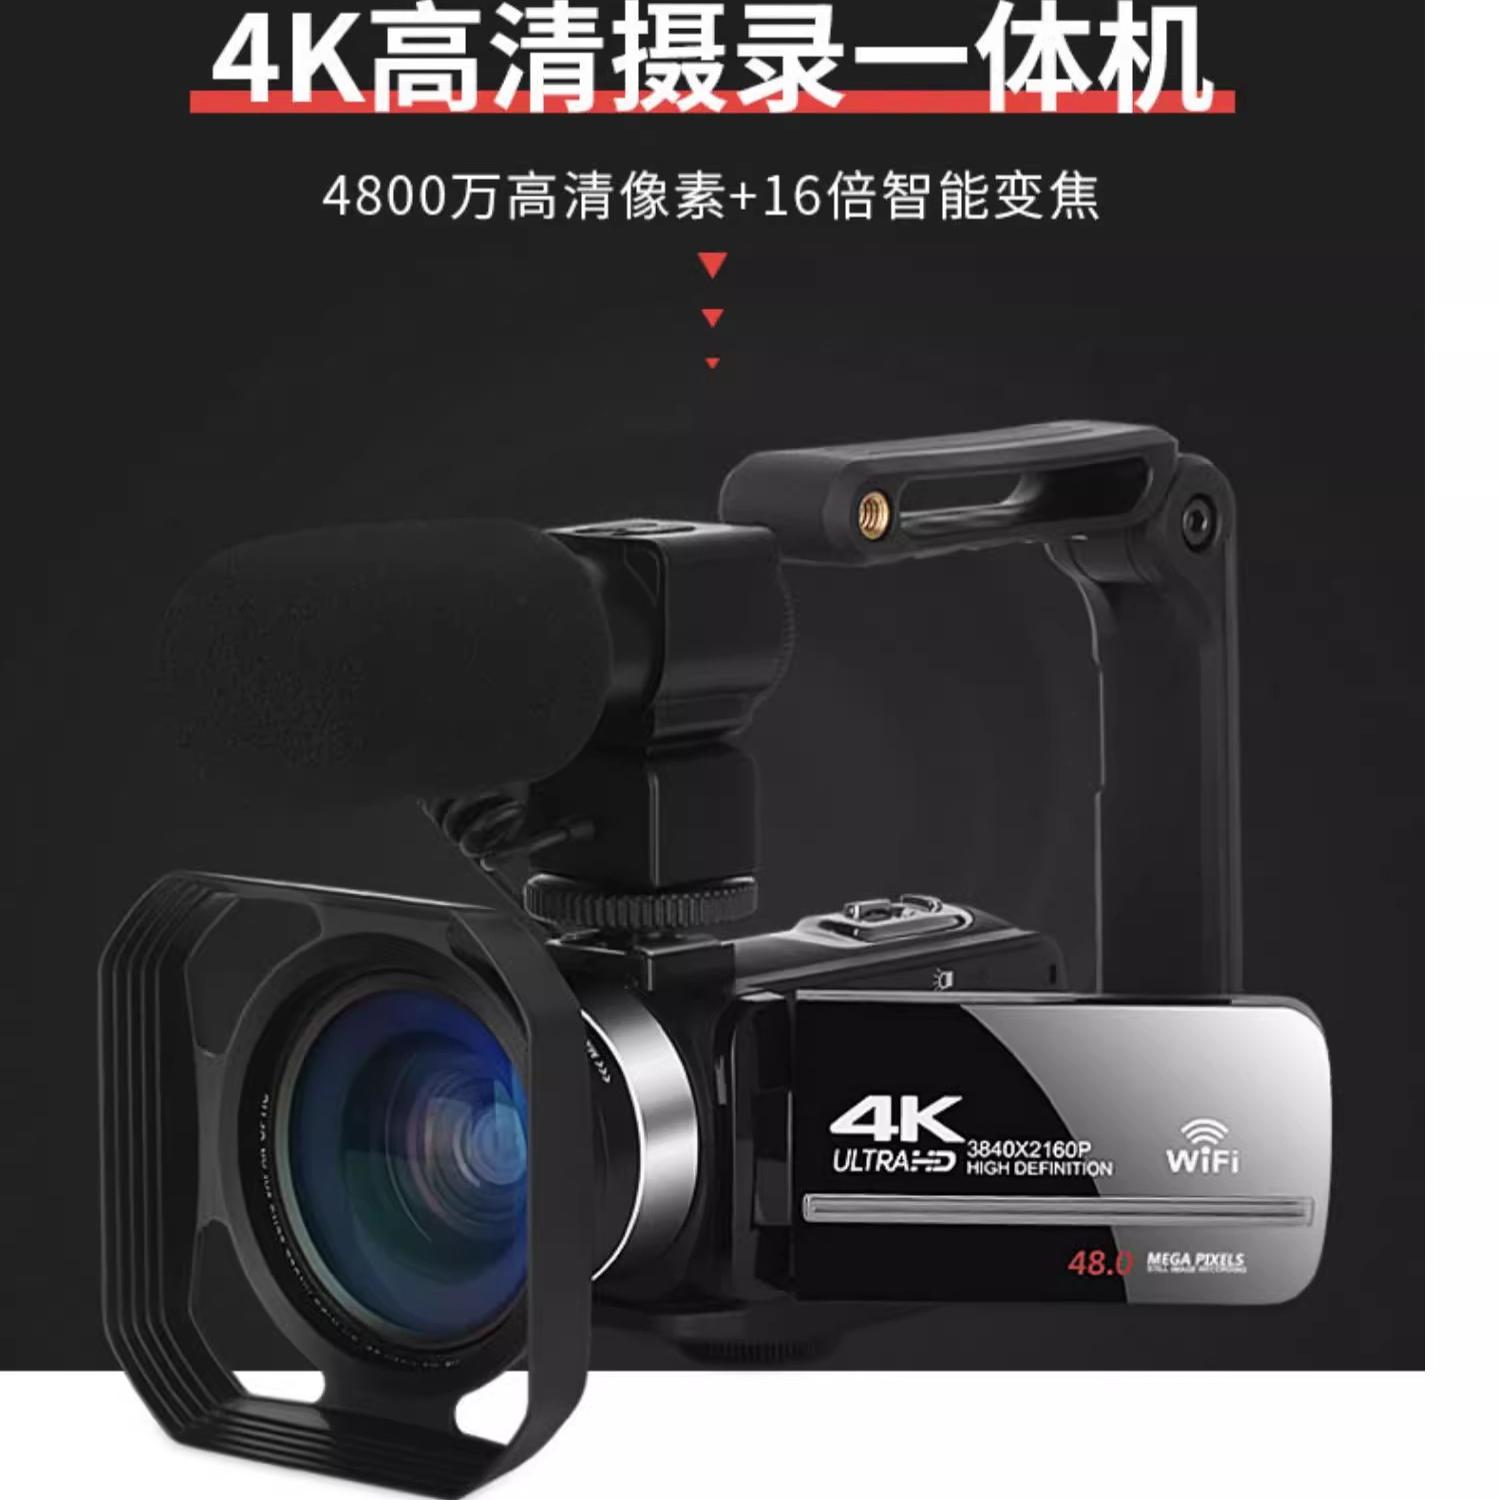 全新专业DV摄像机4K高清数码摄影机家用旅游会议VLOG录像学生相机